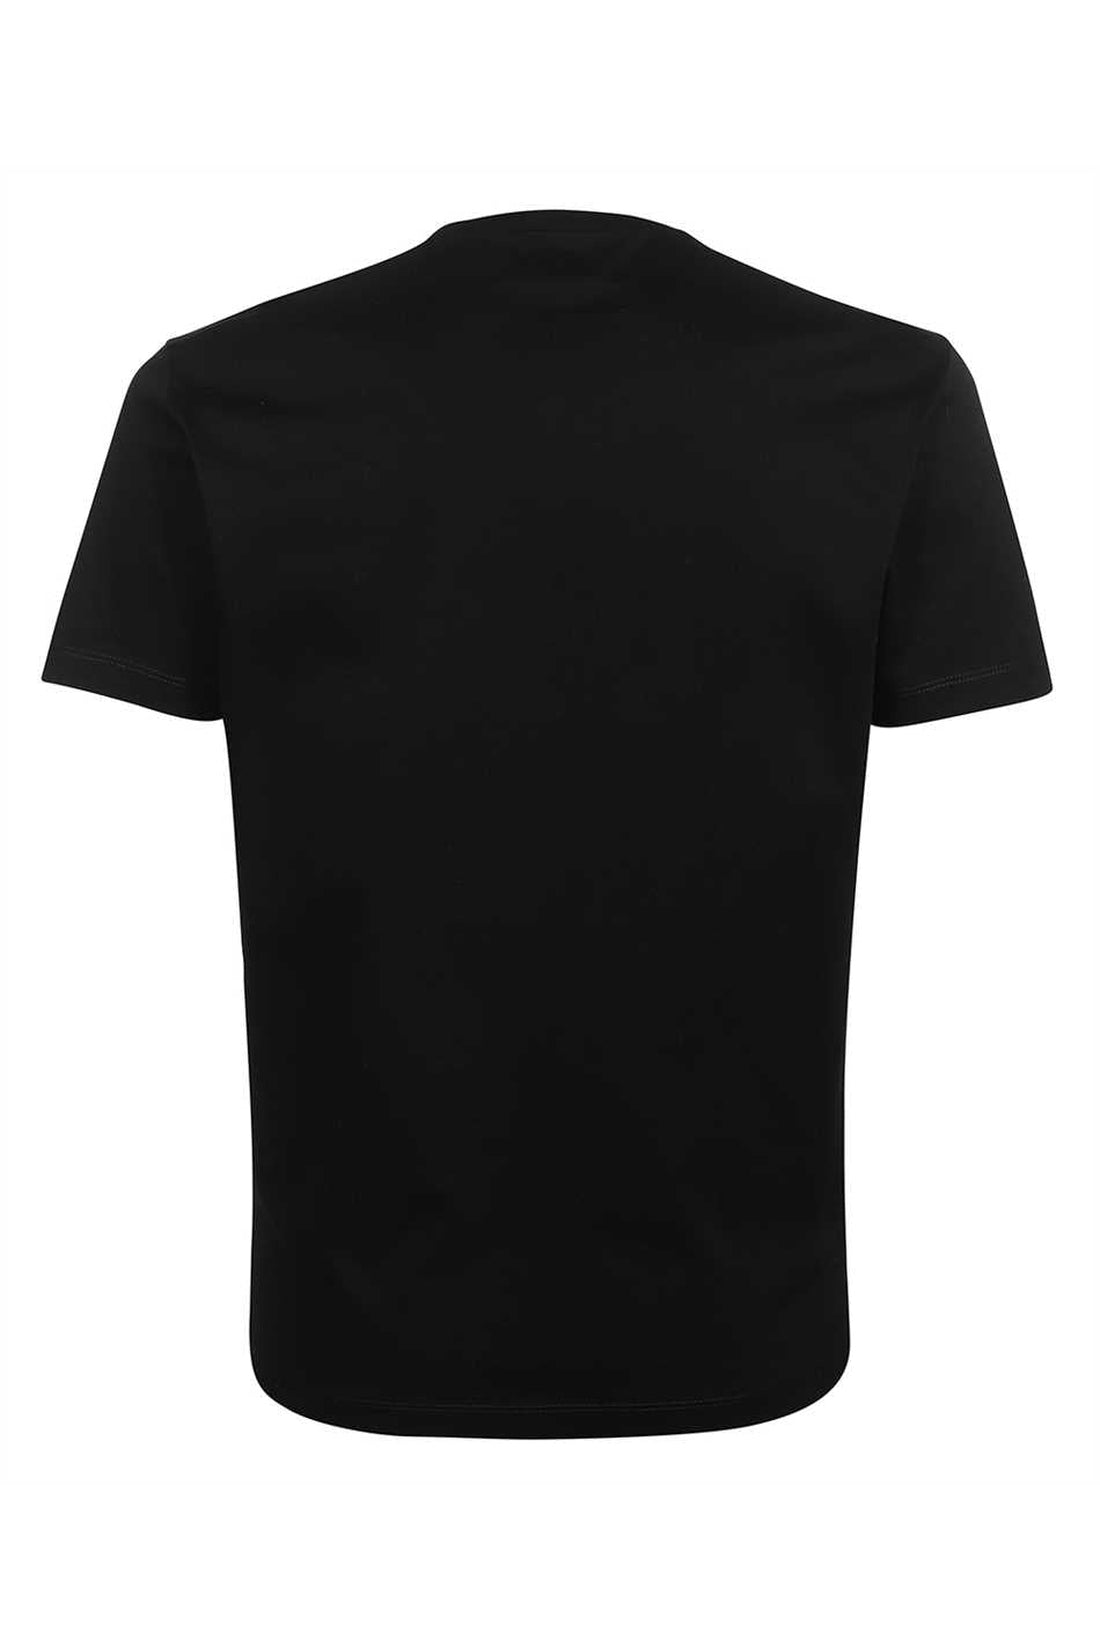 Dsquared2-OUTLET-SALE-Printed cotton T-shirt-ARCHIVIST